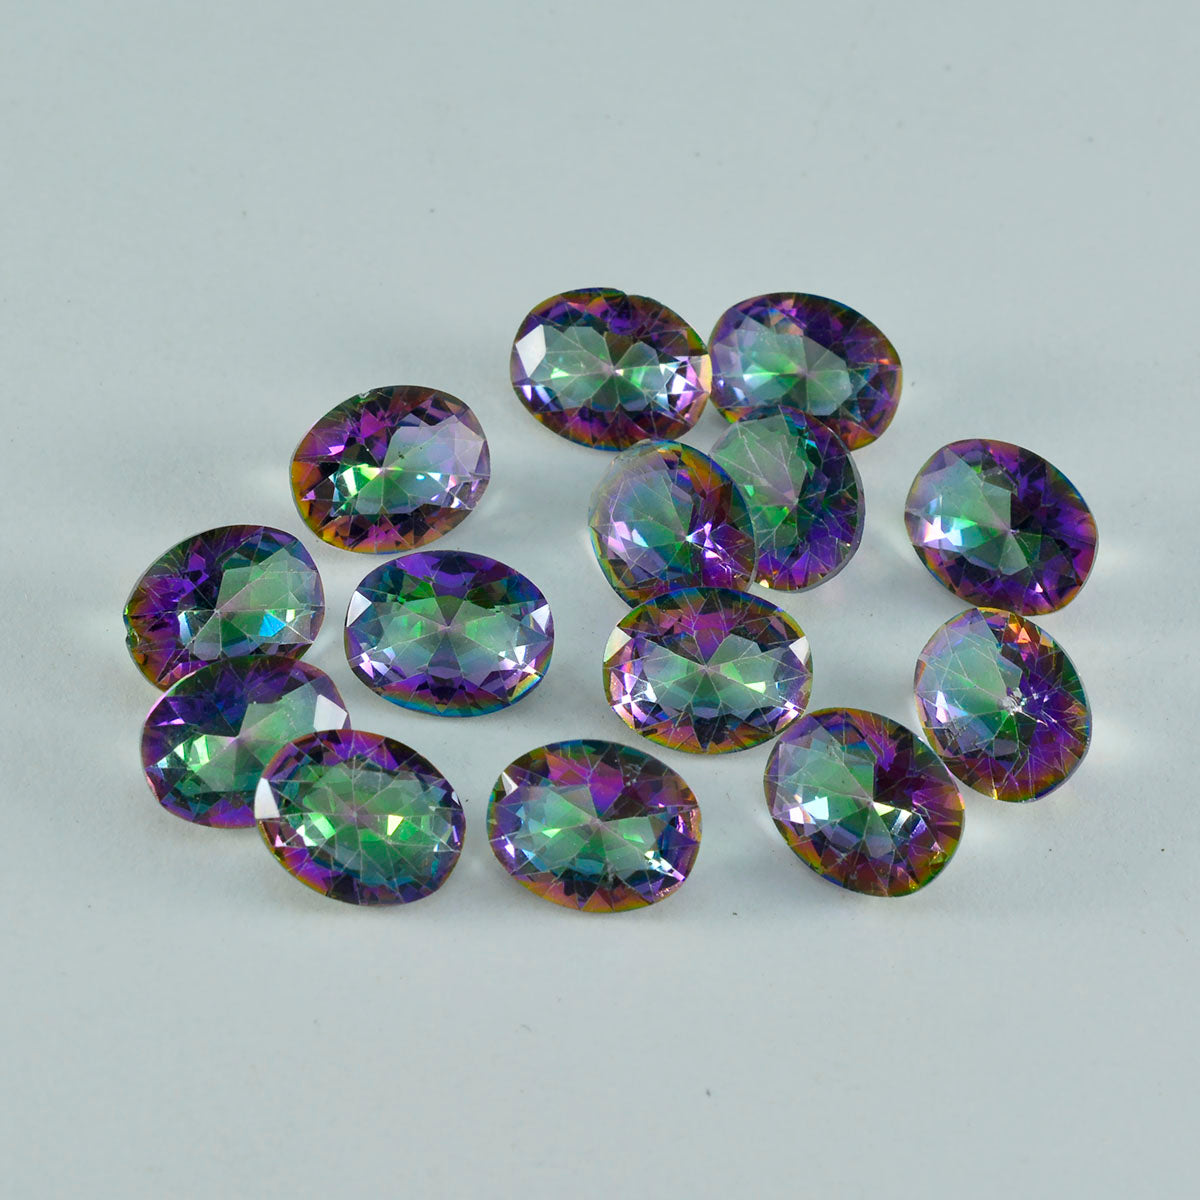 riyogems 1 шт. разноцветный мистический кварц ограненный 7x9 мм овальной формы красивый качественный драгоценный камень